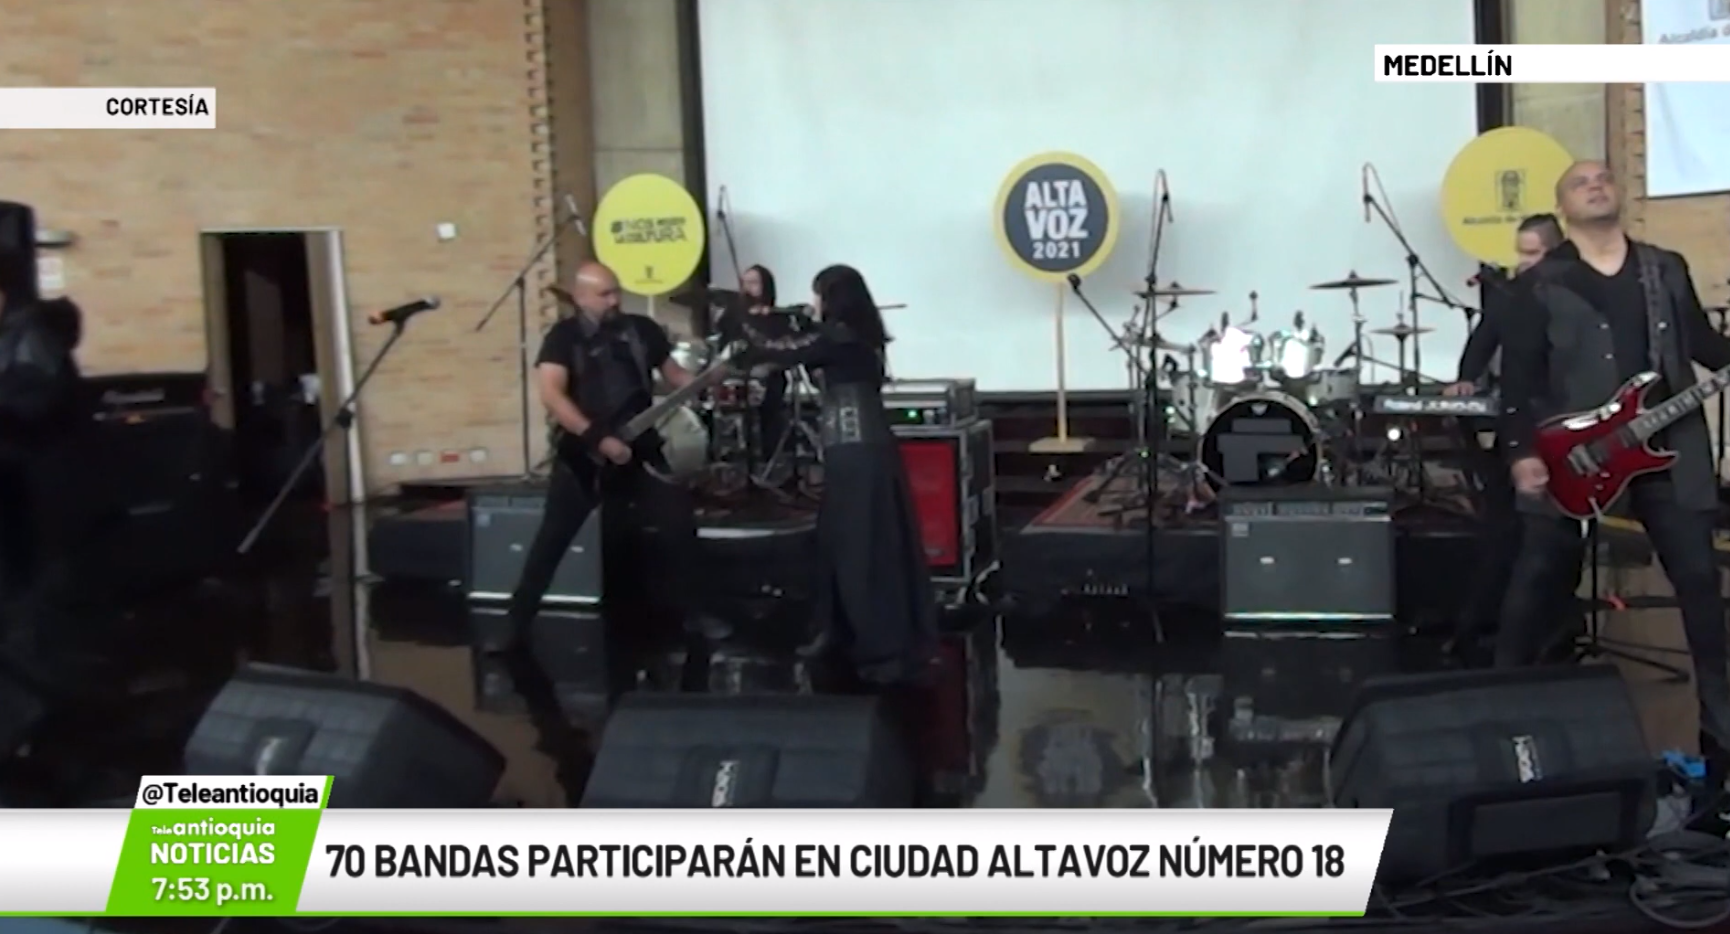 70 bandas participarán en Ciudad Altavoz número 18